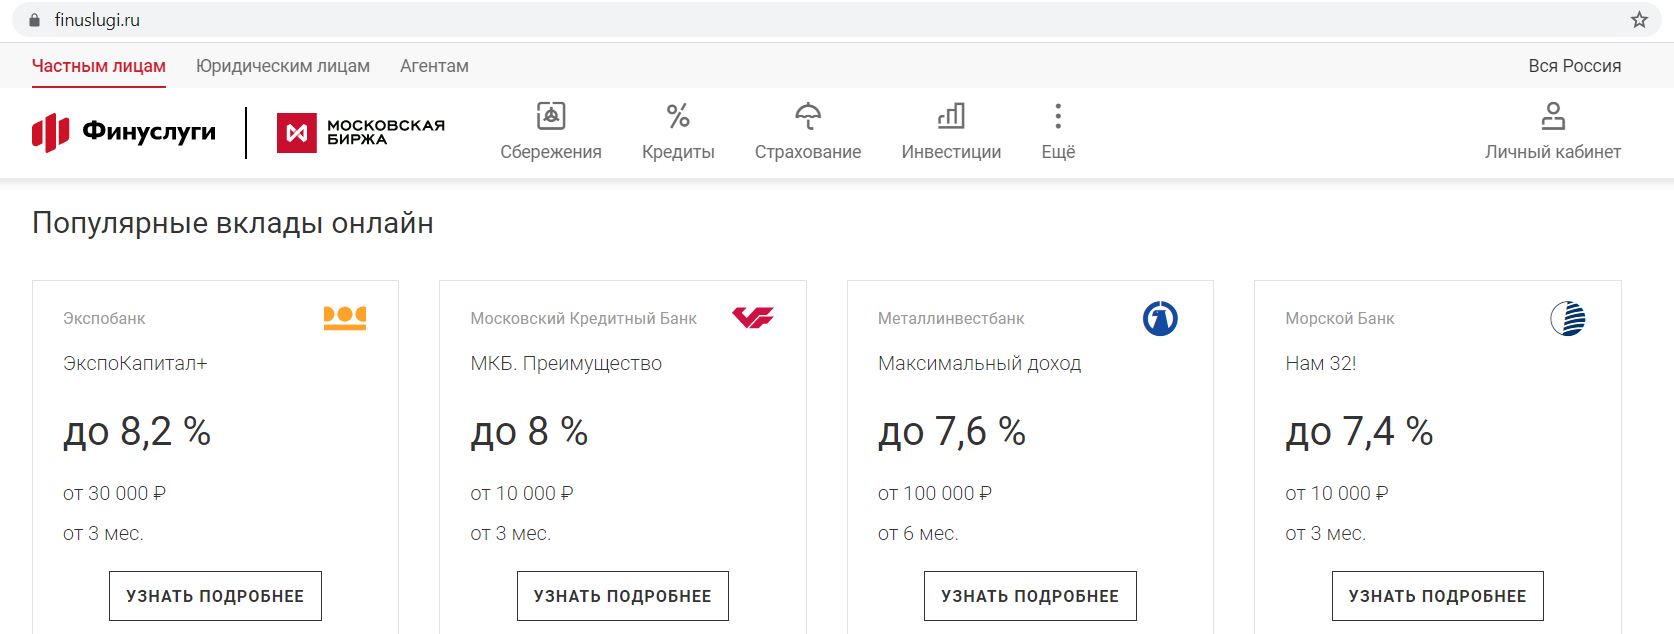 маркетплейс московской биржи платформу финуслуги